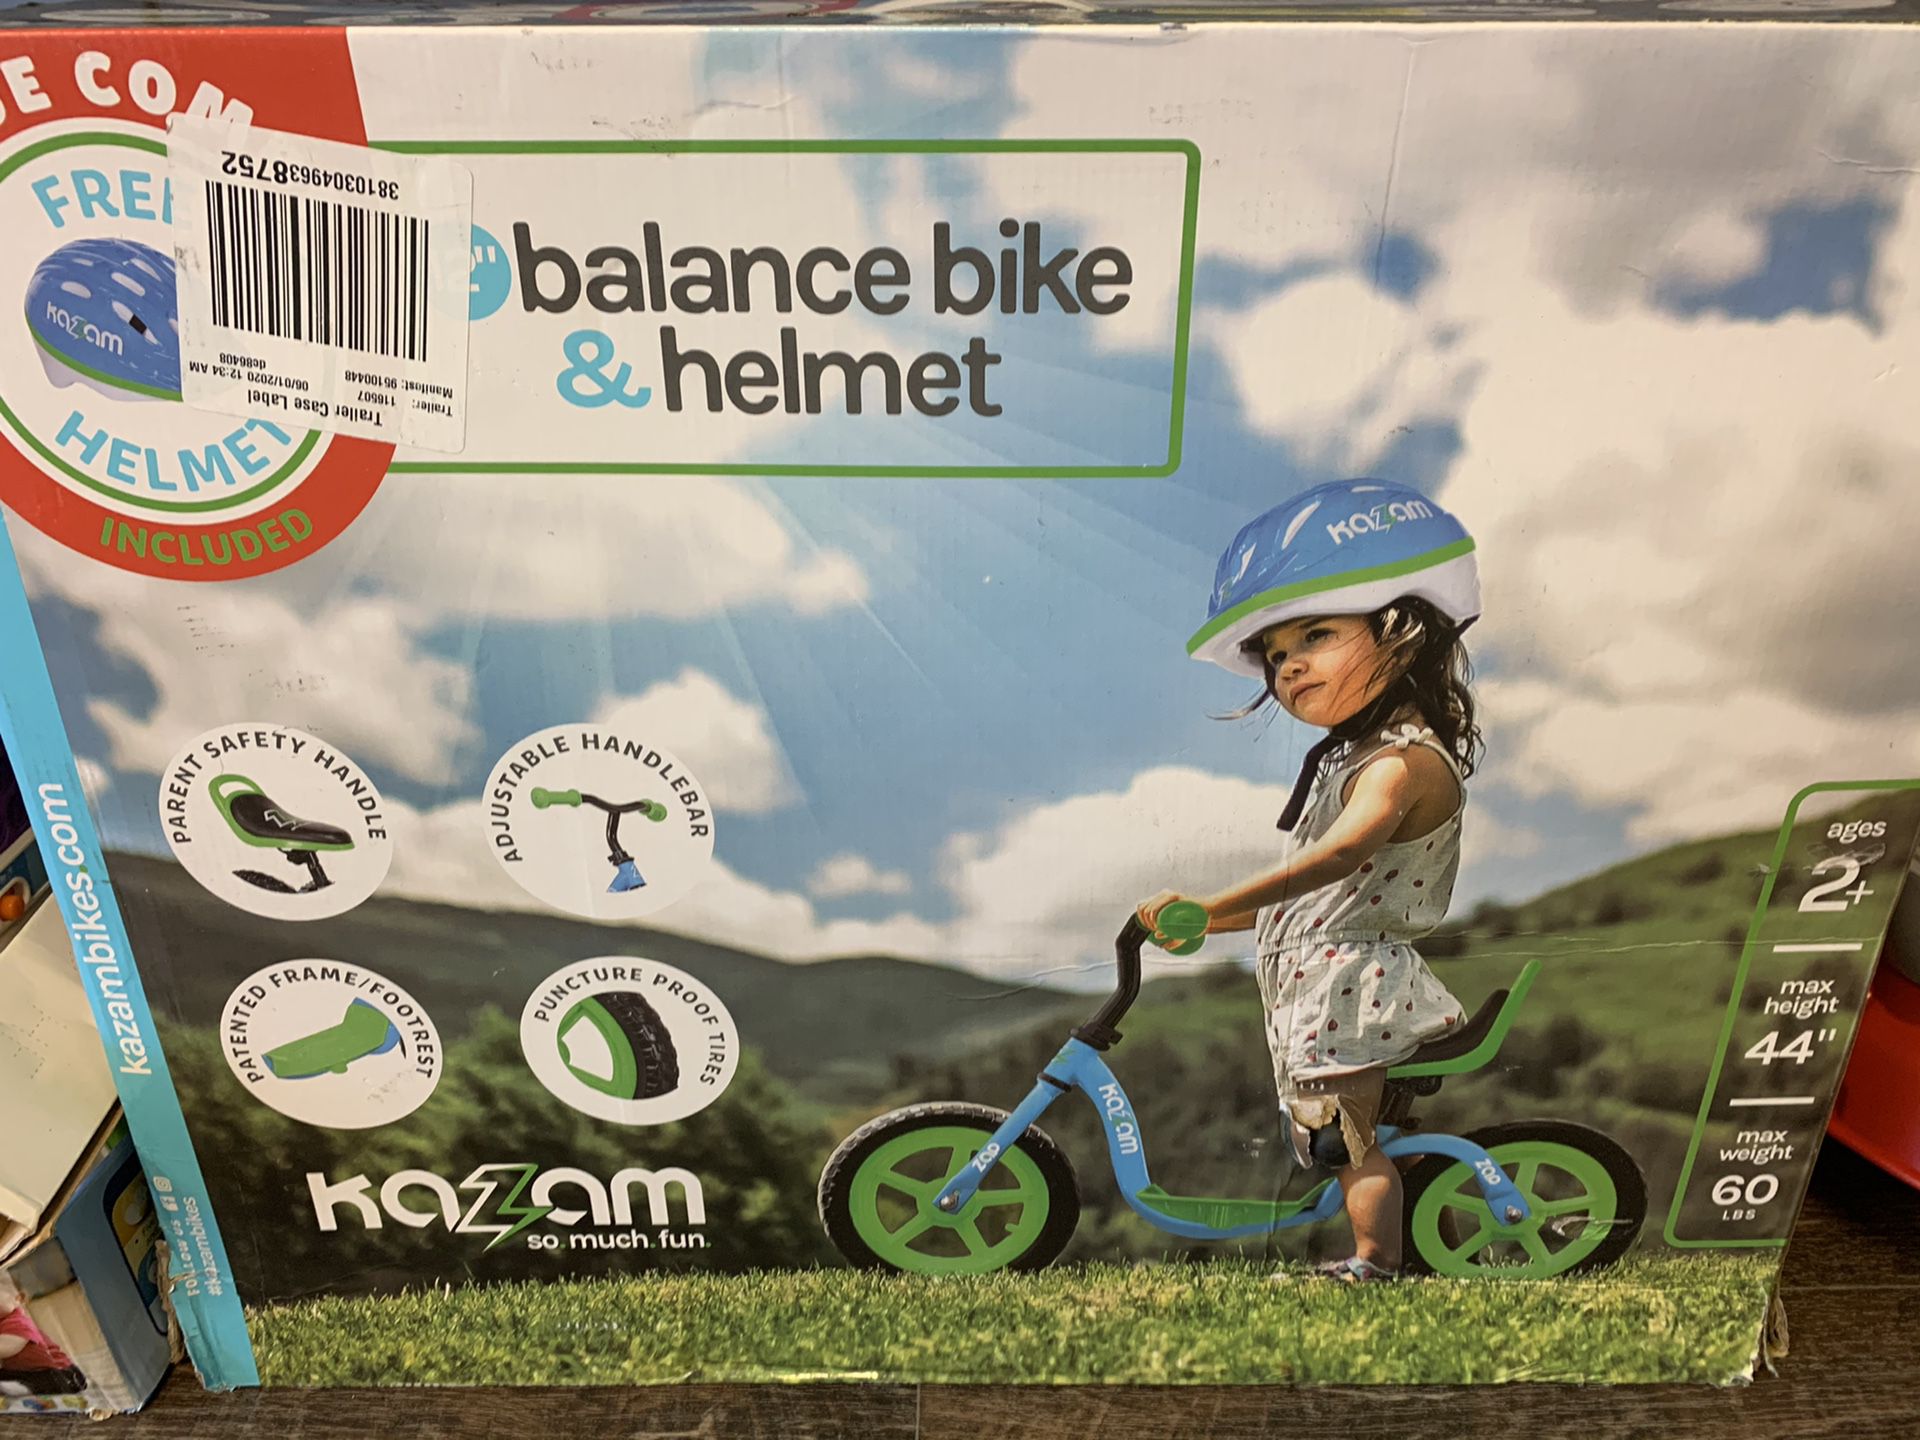 Balance bike& helmet